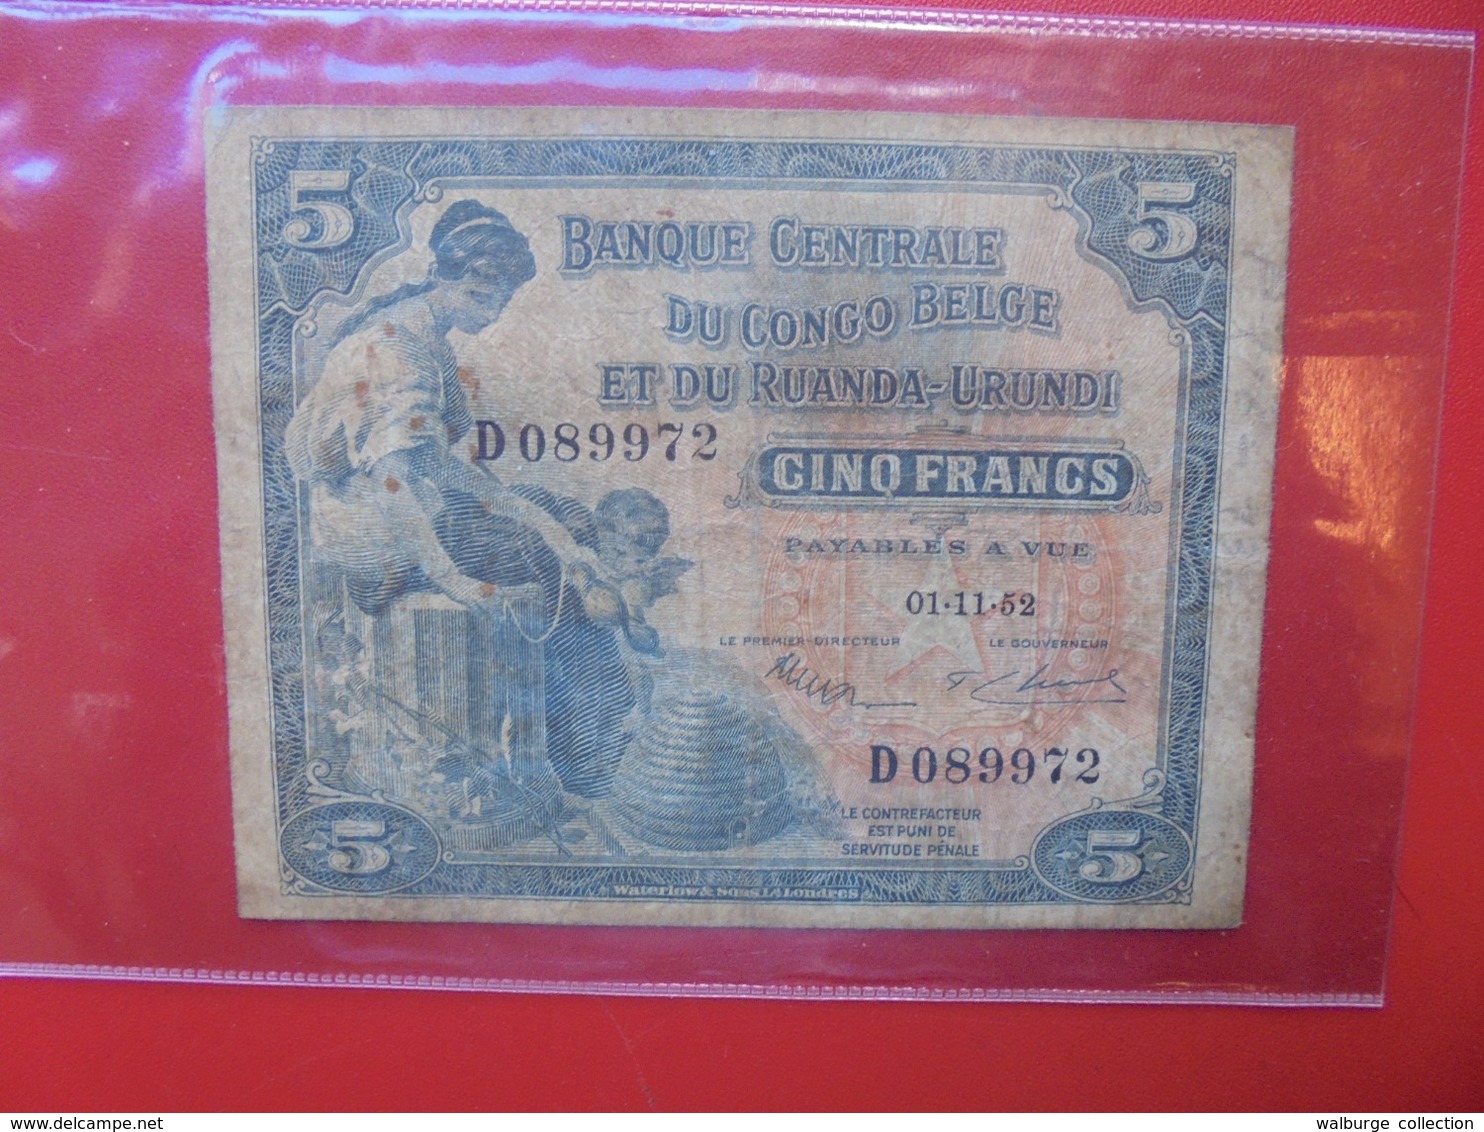 CONGO BELGE 5 FRANCS 1952 CIRCULER  (B.7) - Bank Van Belgisch Kongo